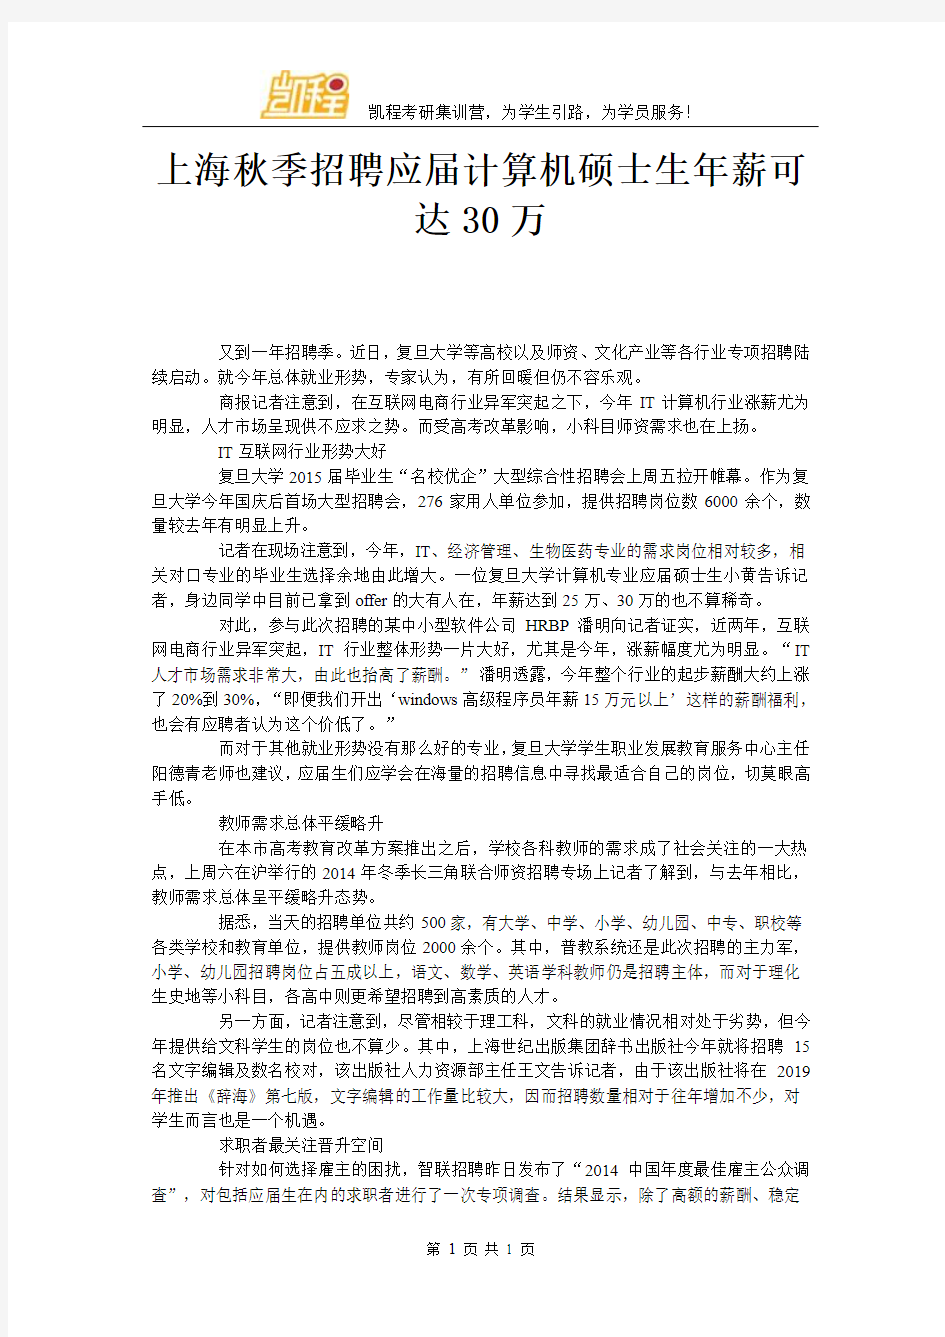 上海秋季招聘应届计算机硕士生年薪可达30万‘